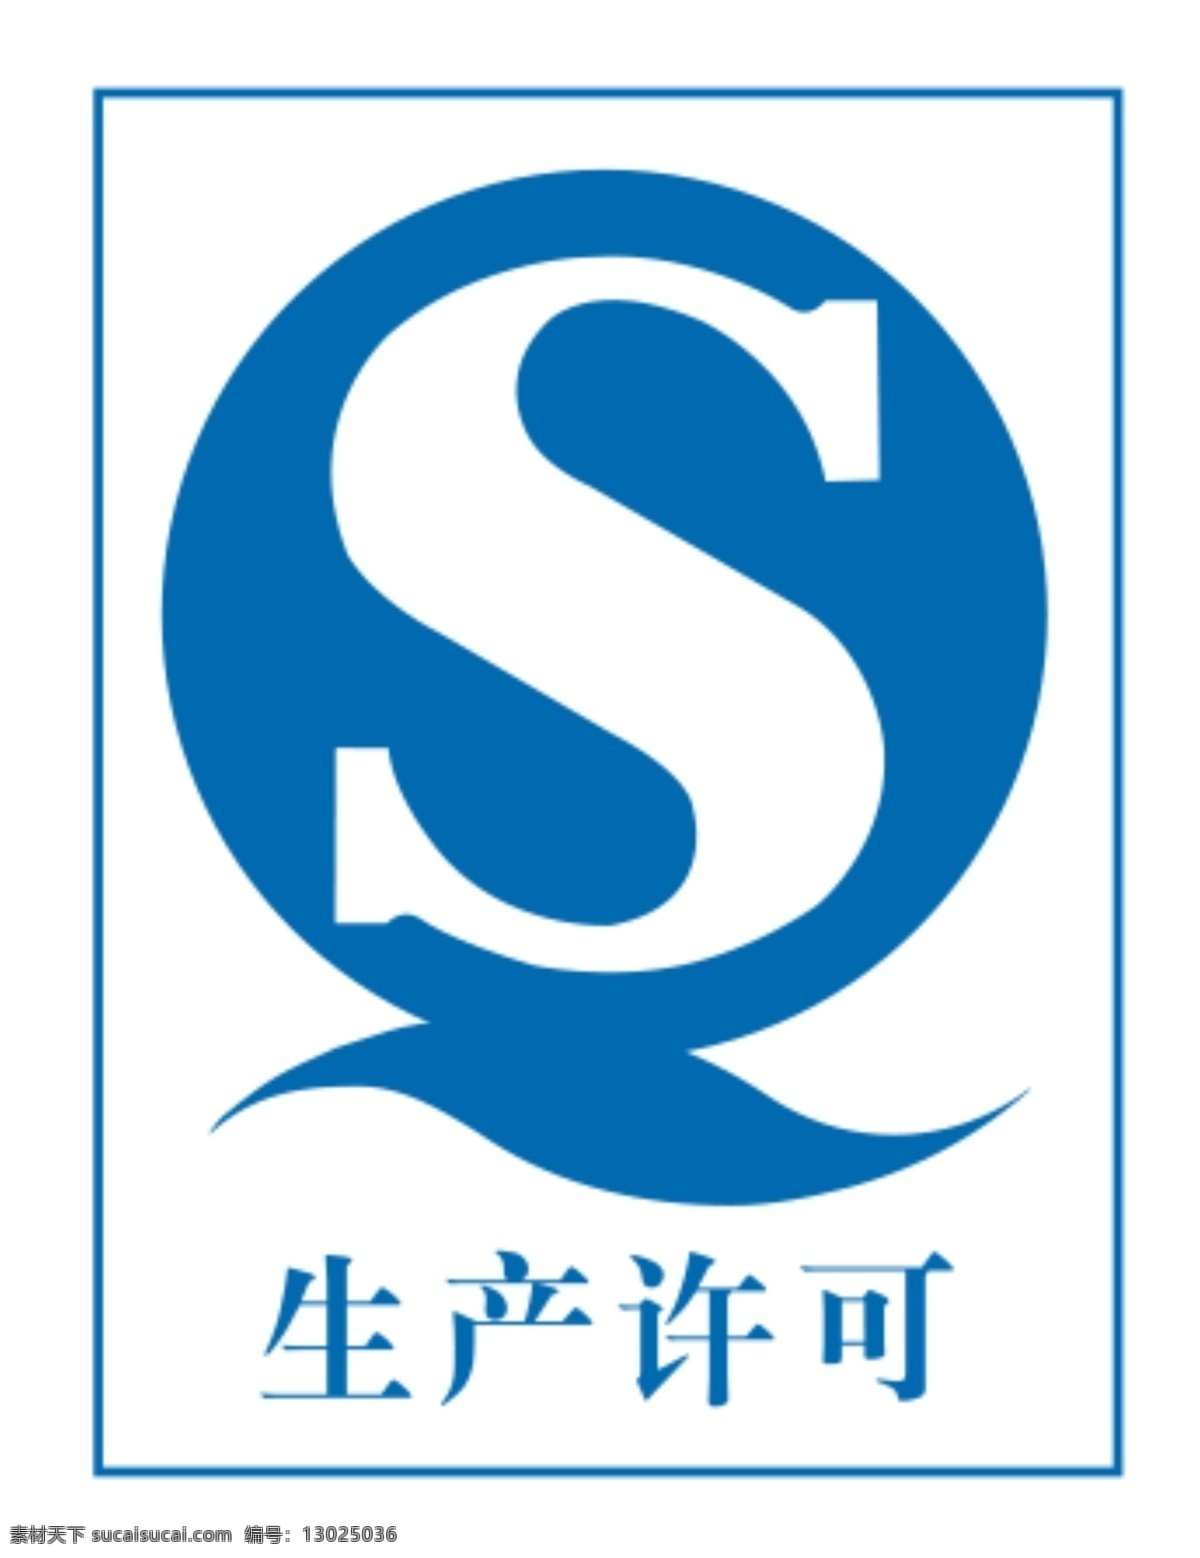 s生产许可证 qs图标 许可证 qs标志 图形图标 标志图标 公共标识标志